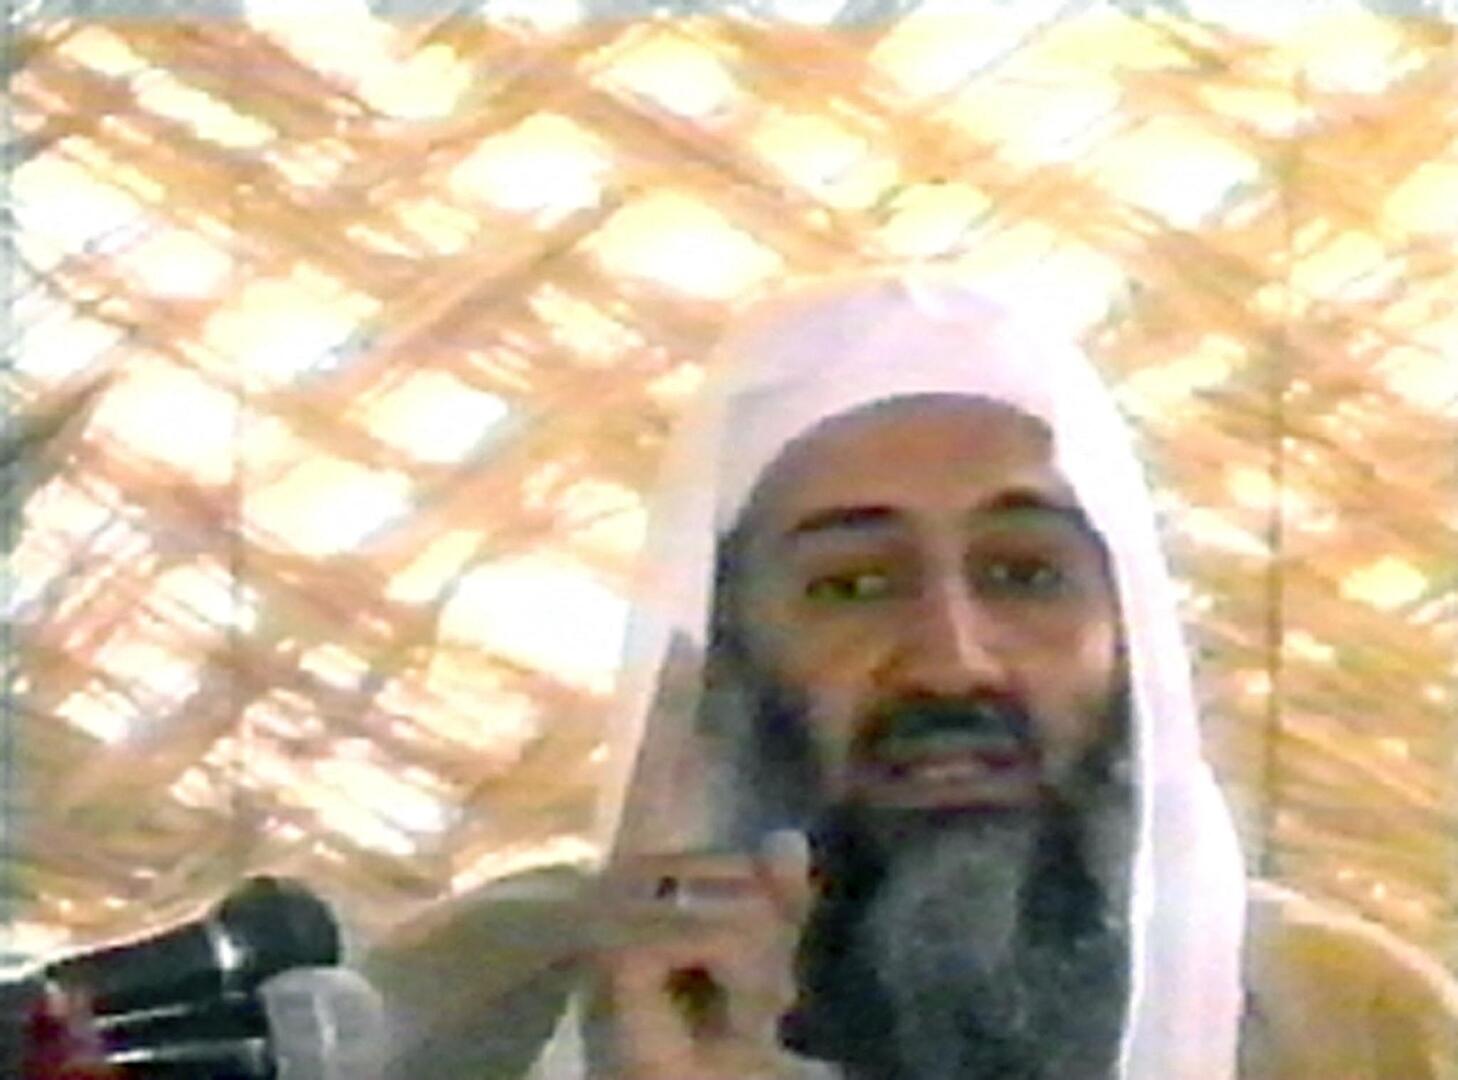 هل علمت عائلة أسامة بن لادن بأنه سيوجه ضربة للولايات المتحدة قبل 11 سبتمبر؟ نجله يكشف تفاصيل (فيديو)